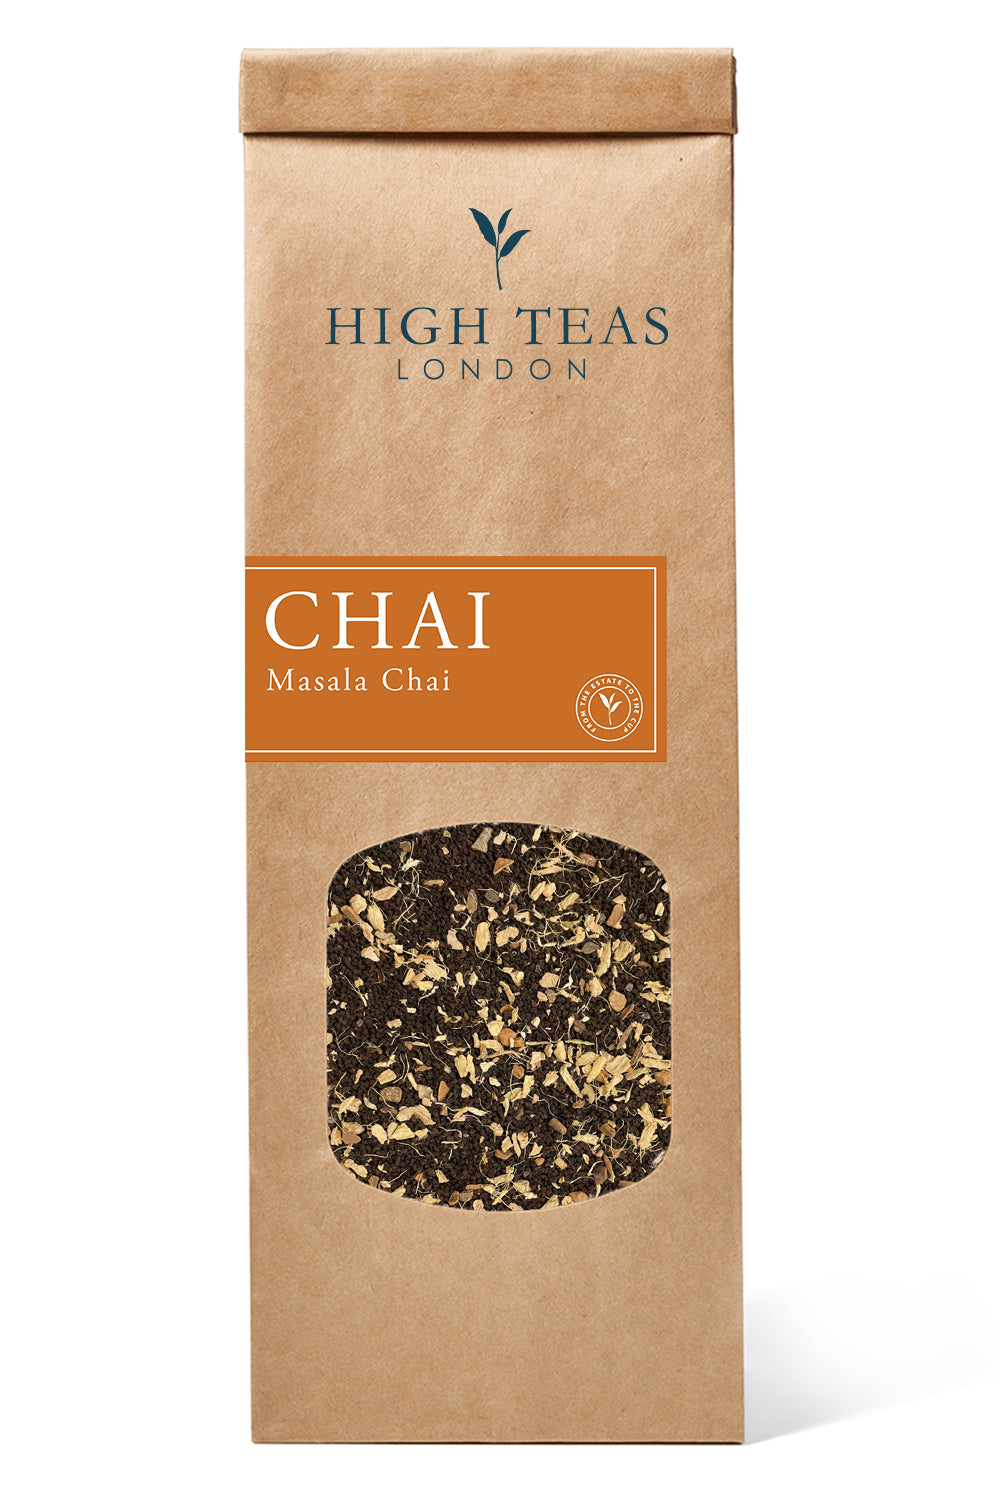 Masala Chai - The House Choice-50g-Loose Leaf Tea-High Teas